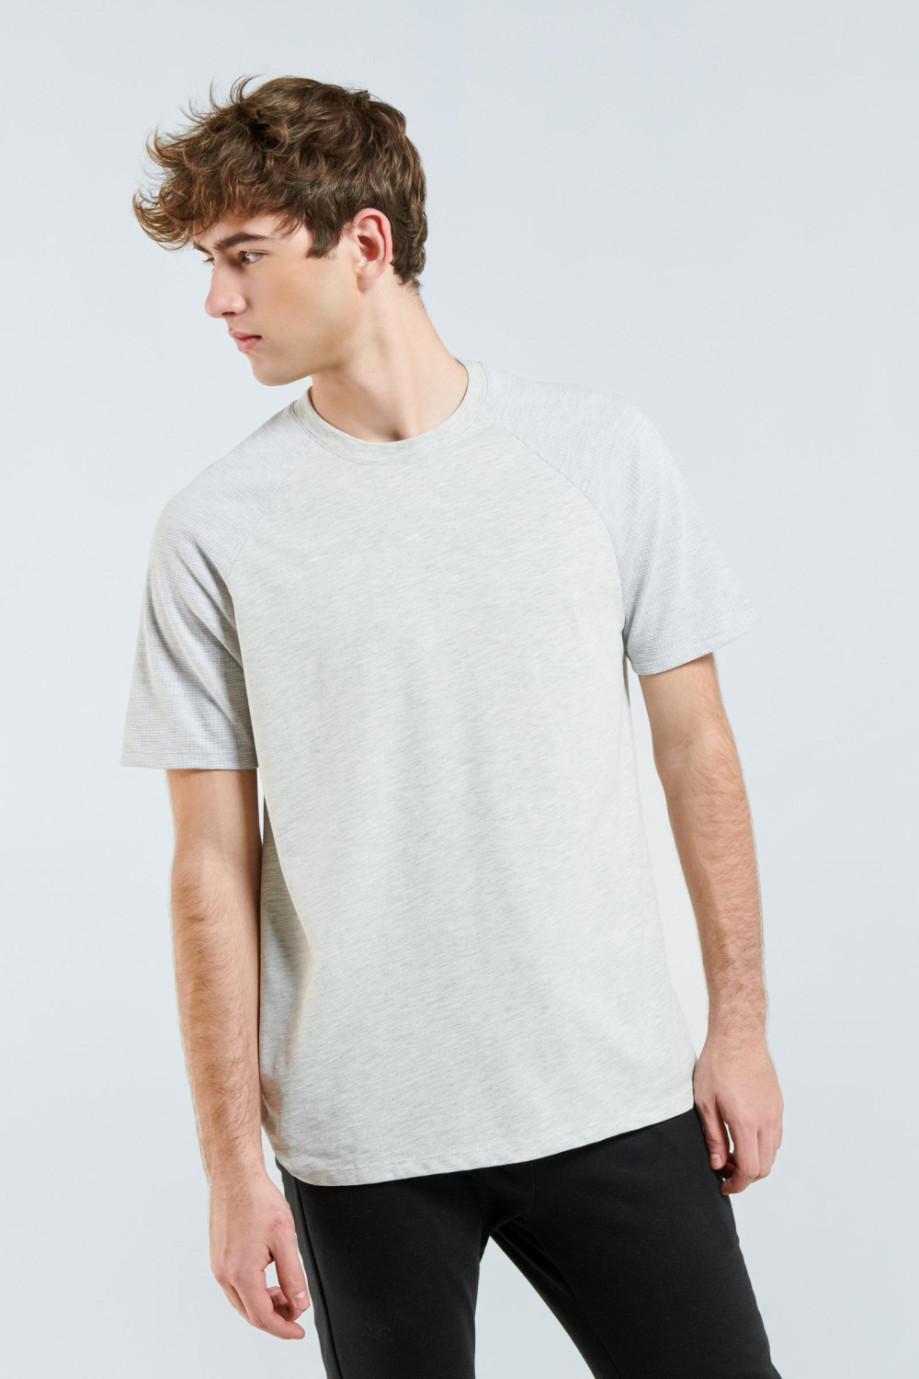 Camiseta gris con manga ranglan corta con texturas